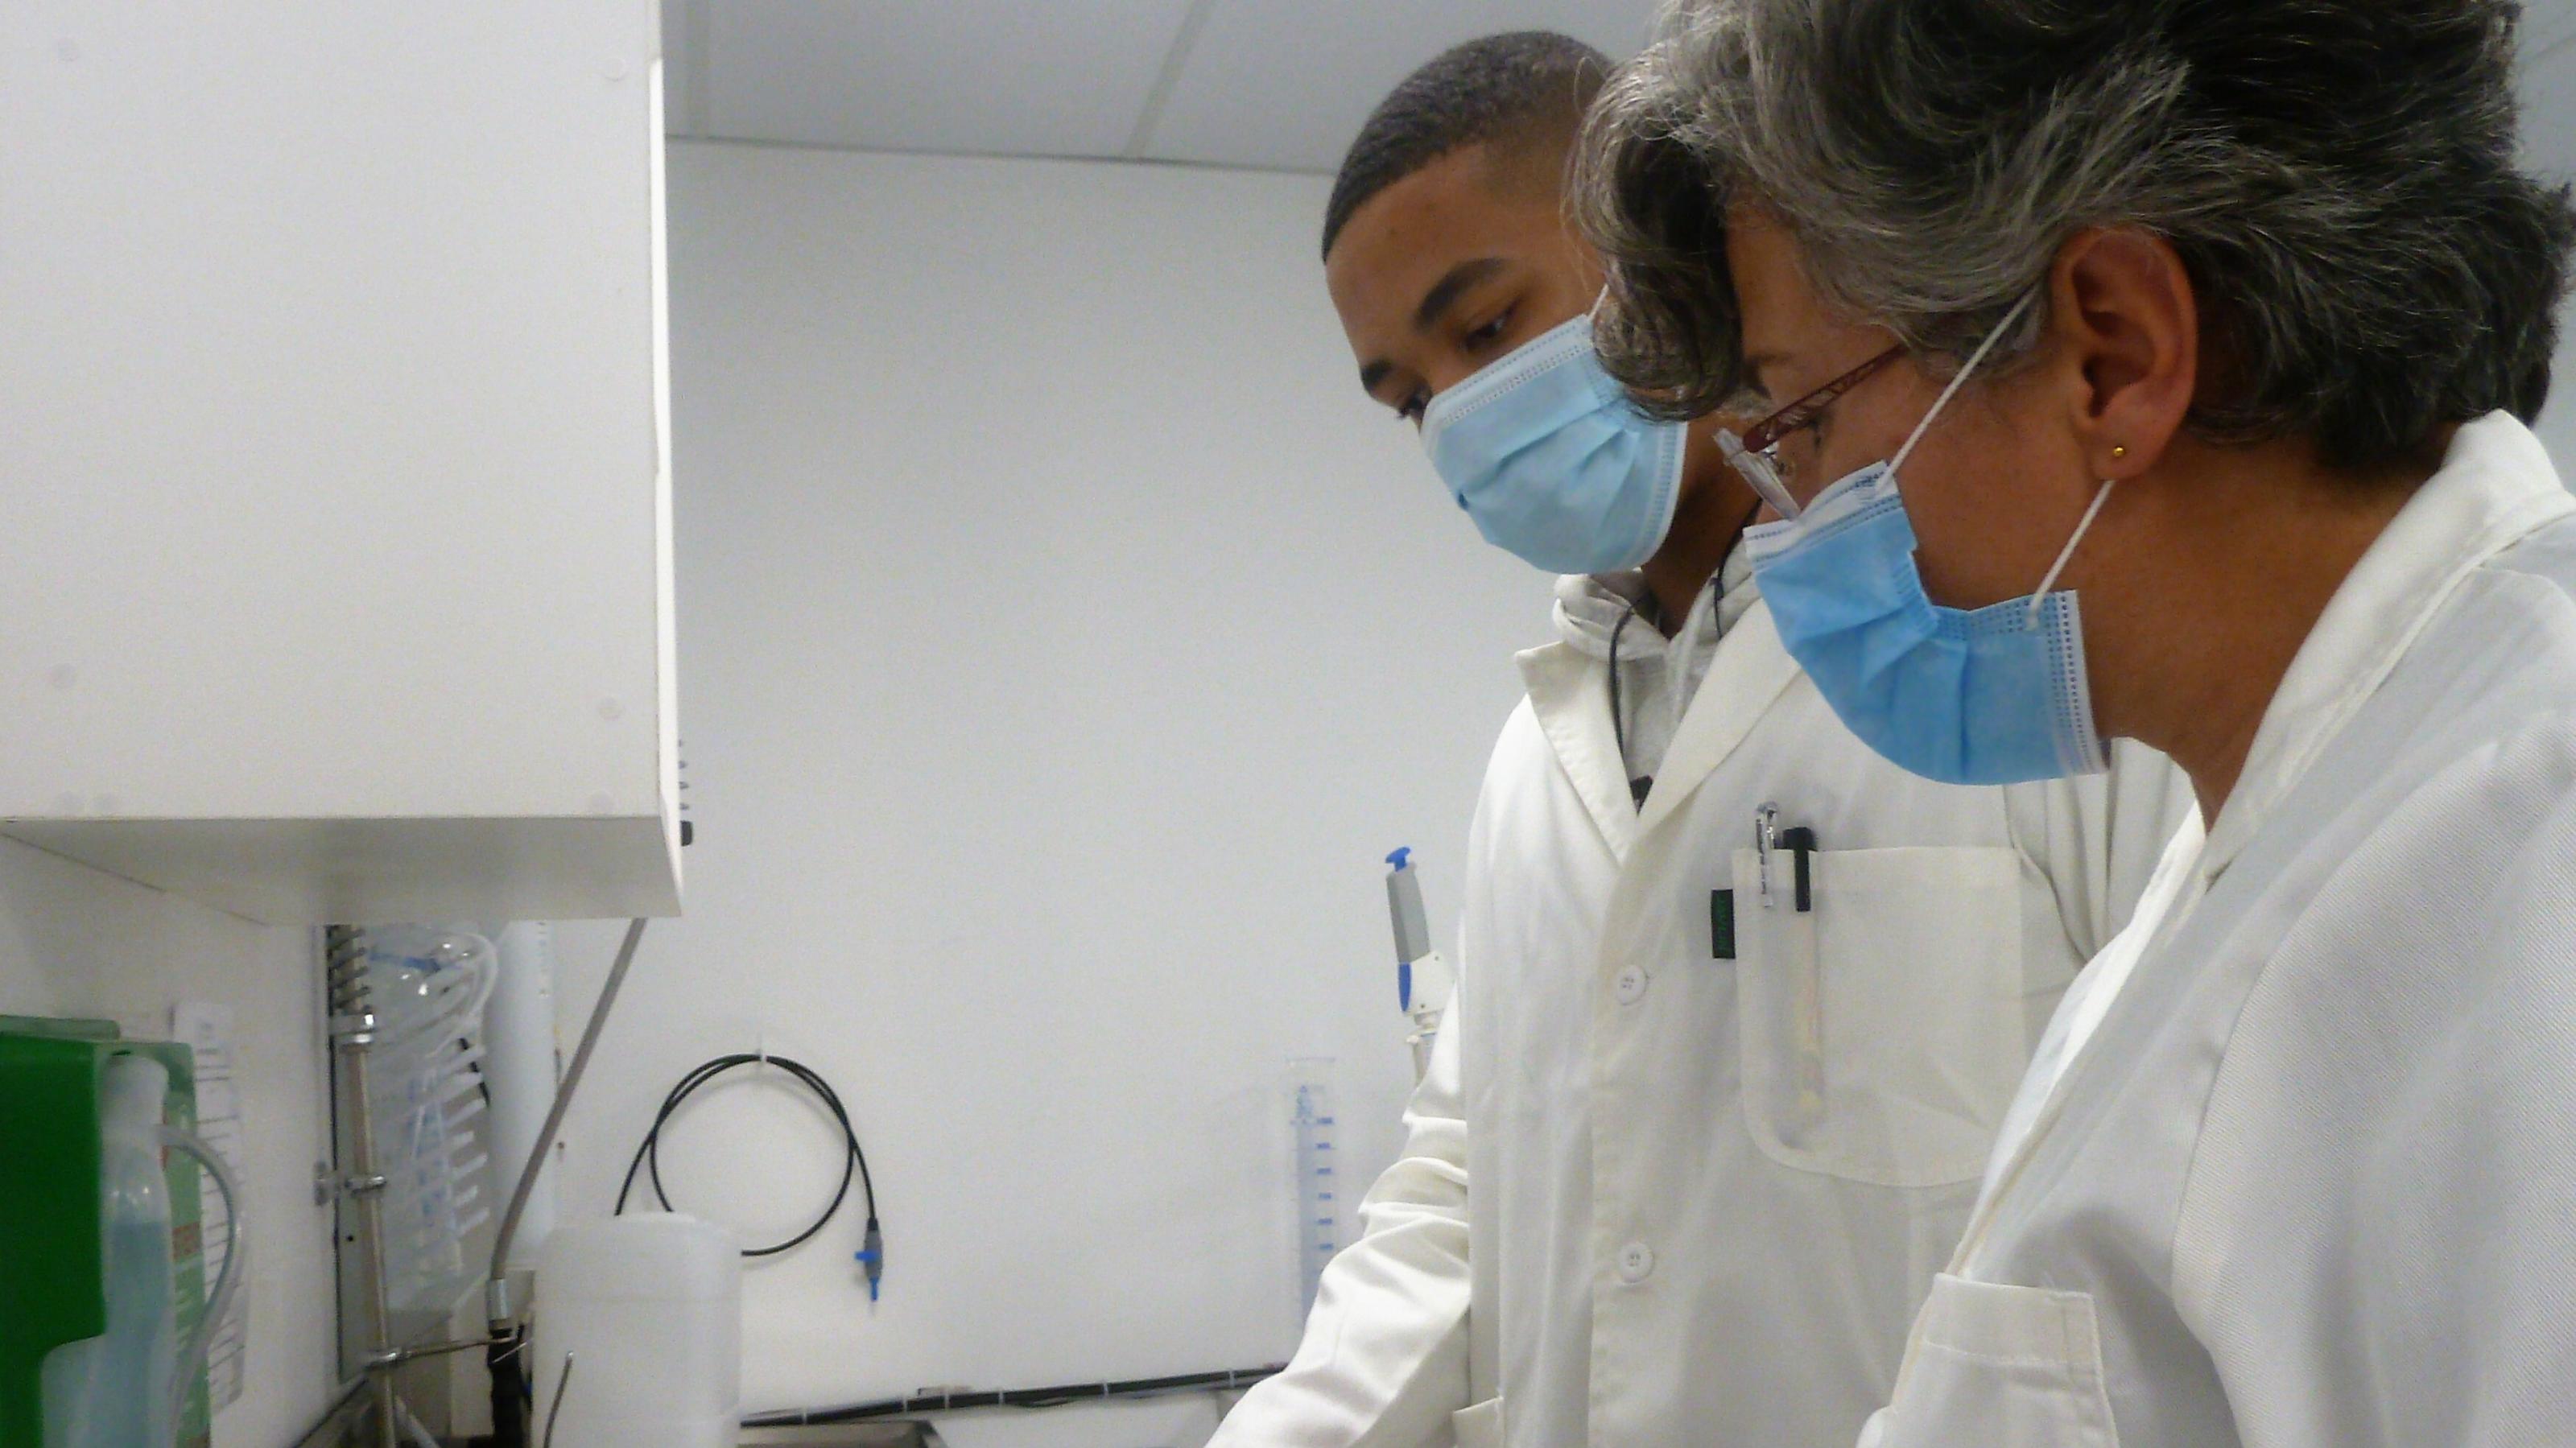 Zwei Forschende mit Masken, eine Frau und ein Mann, schauen im Labor auf die Anzeige eines Labor-Geräts